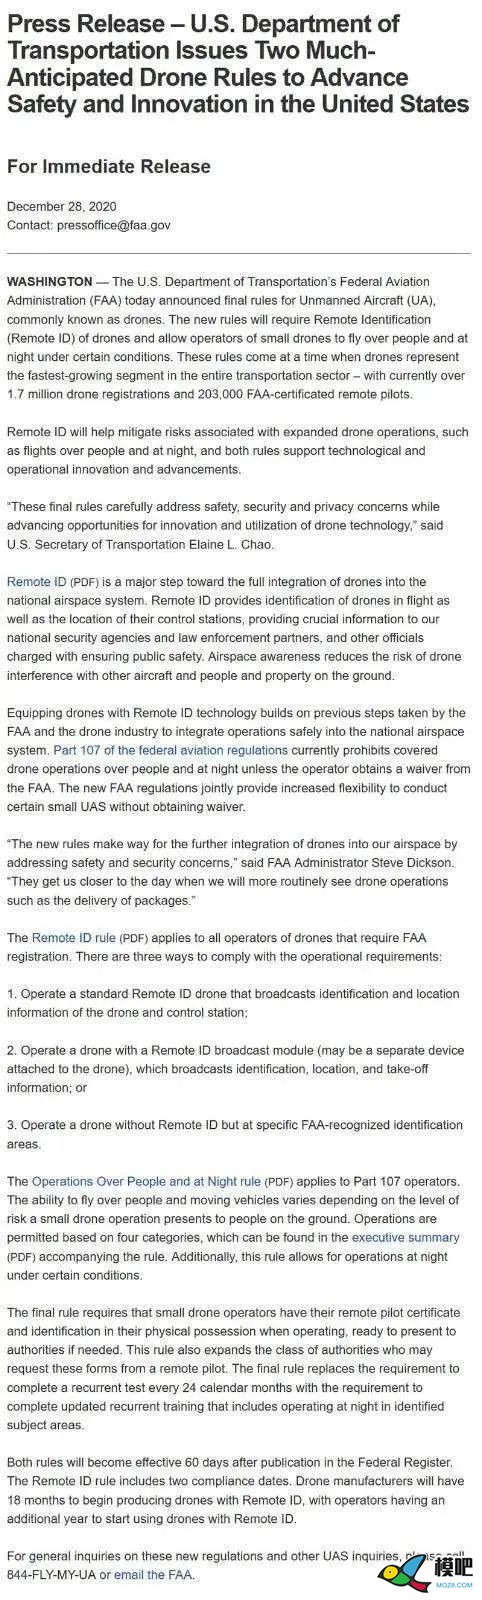 美国将允许无人机飞越人员上空和夜间飞行，助推无人机送货服务 ...3019 